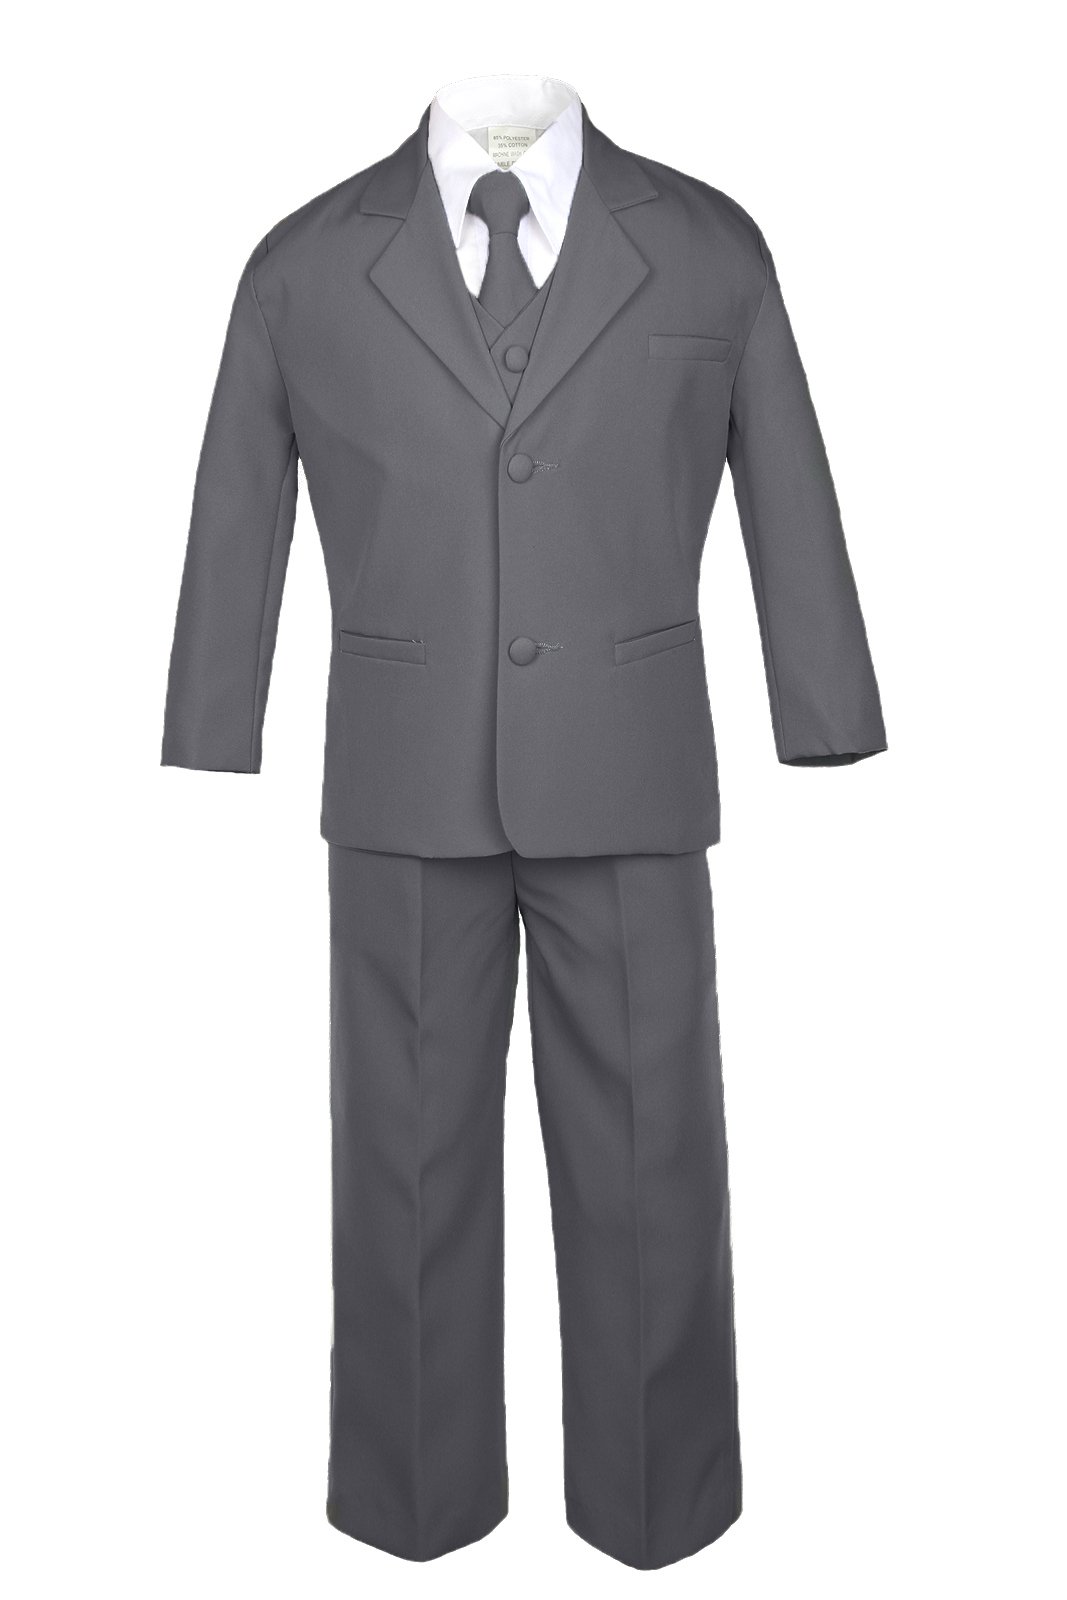 7pc Formal Boy Dark Gray Suits Extra Satin Brown Vest Necktie Set S-20 (18)